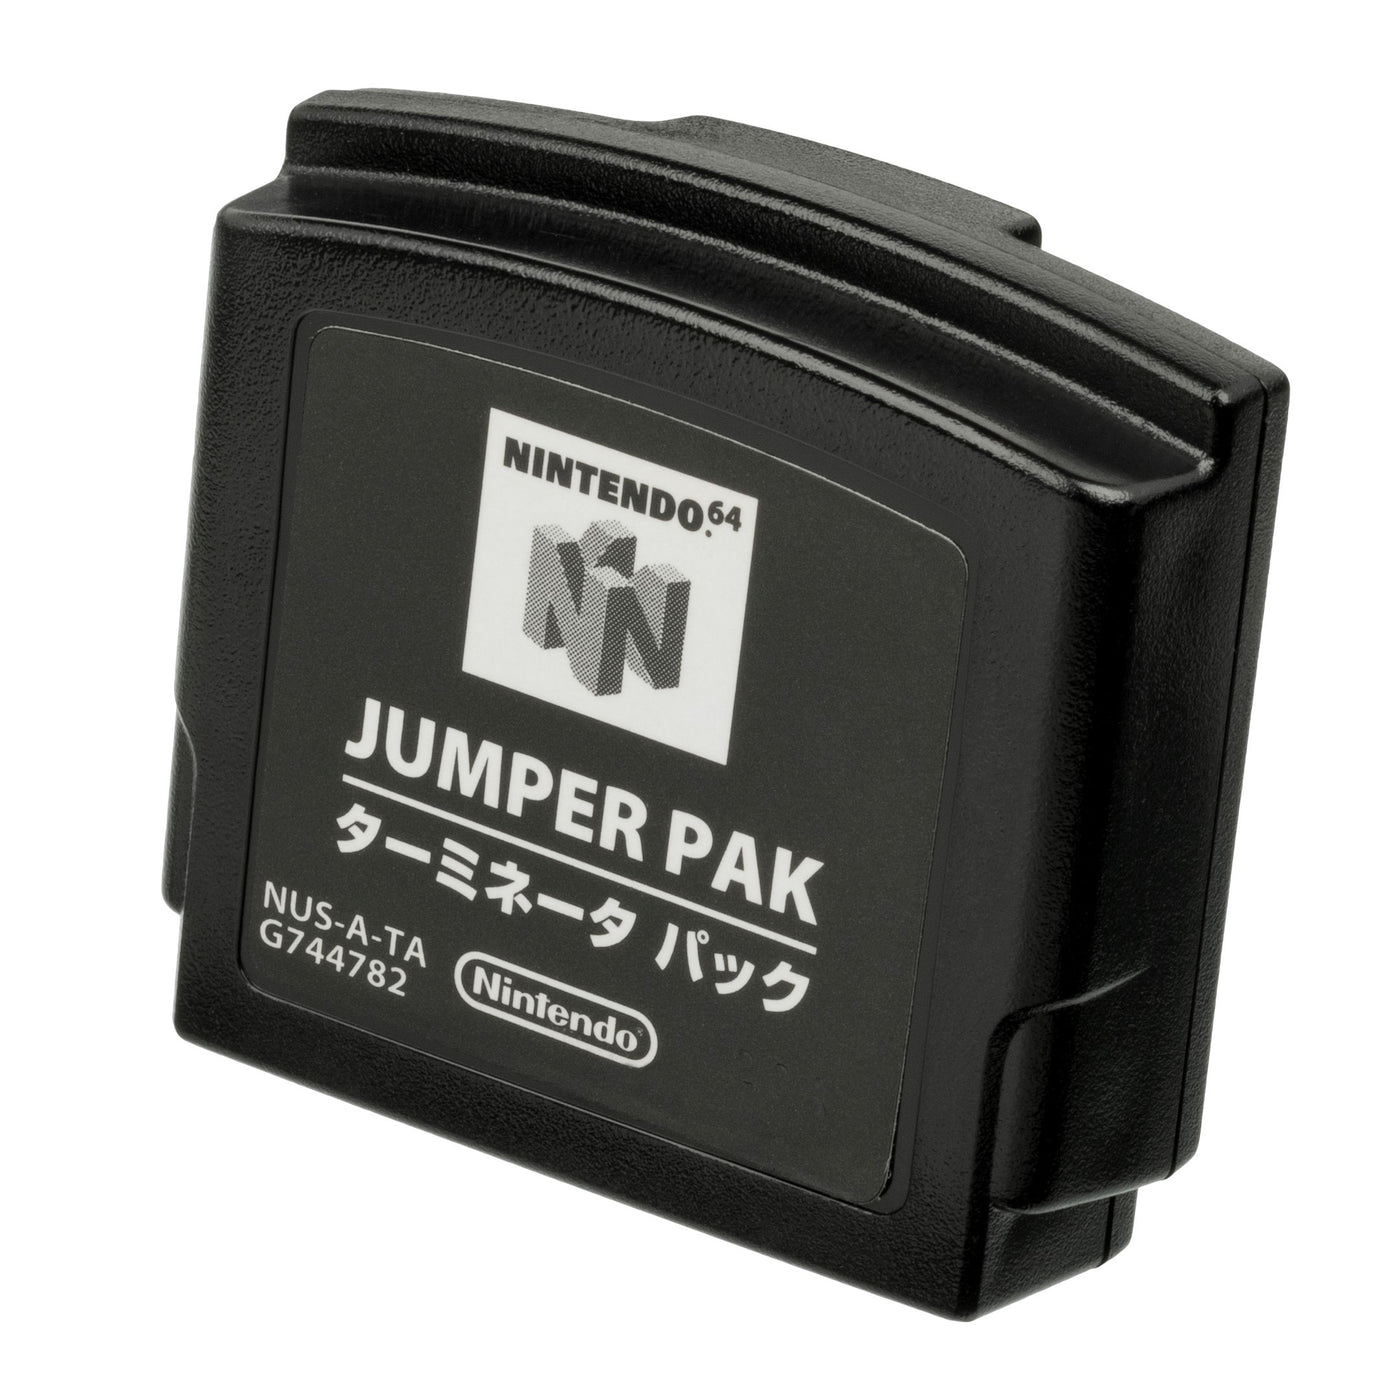 Nintendo 64 - OEM Jumper Pack W/ Removal Tool